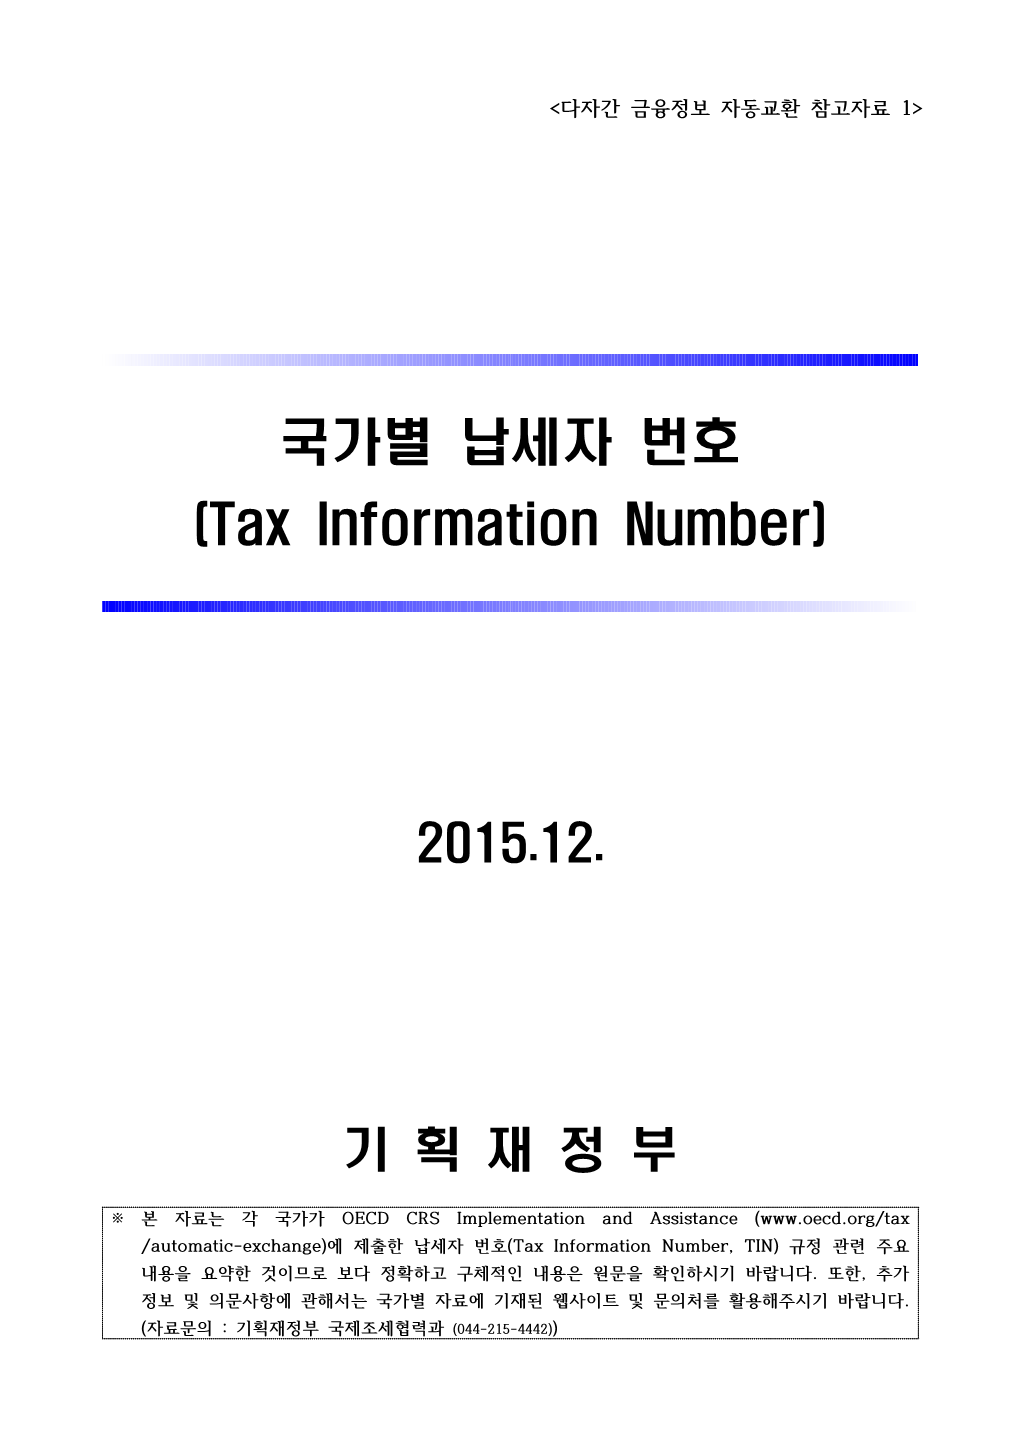 국가별 납세자 번호 (Tax Information Number)